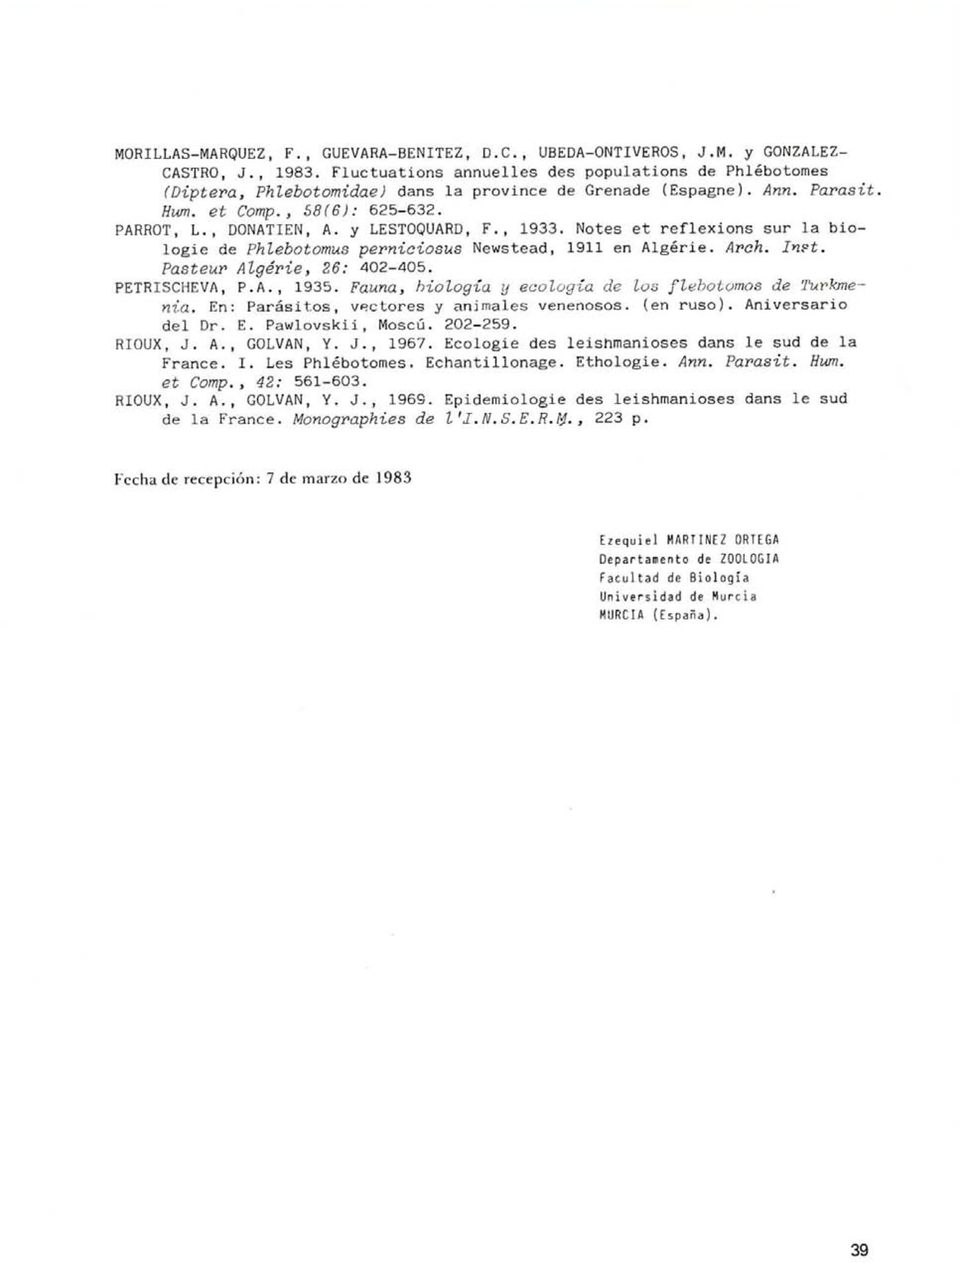 y LESTOQUARD, F., 1933. Notes et reflexions sur la biologie de Phlebotomus perniciosus Newstead, 1911 en Algérie. Aroh. In?t. Pasteur Algérie, 26: 402-405. PETRISCHEVA, P.A., 1935.